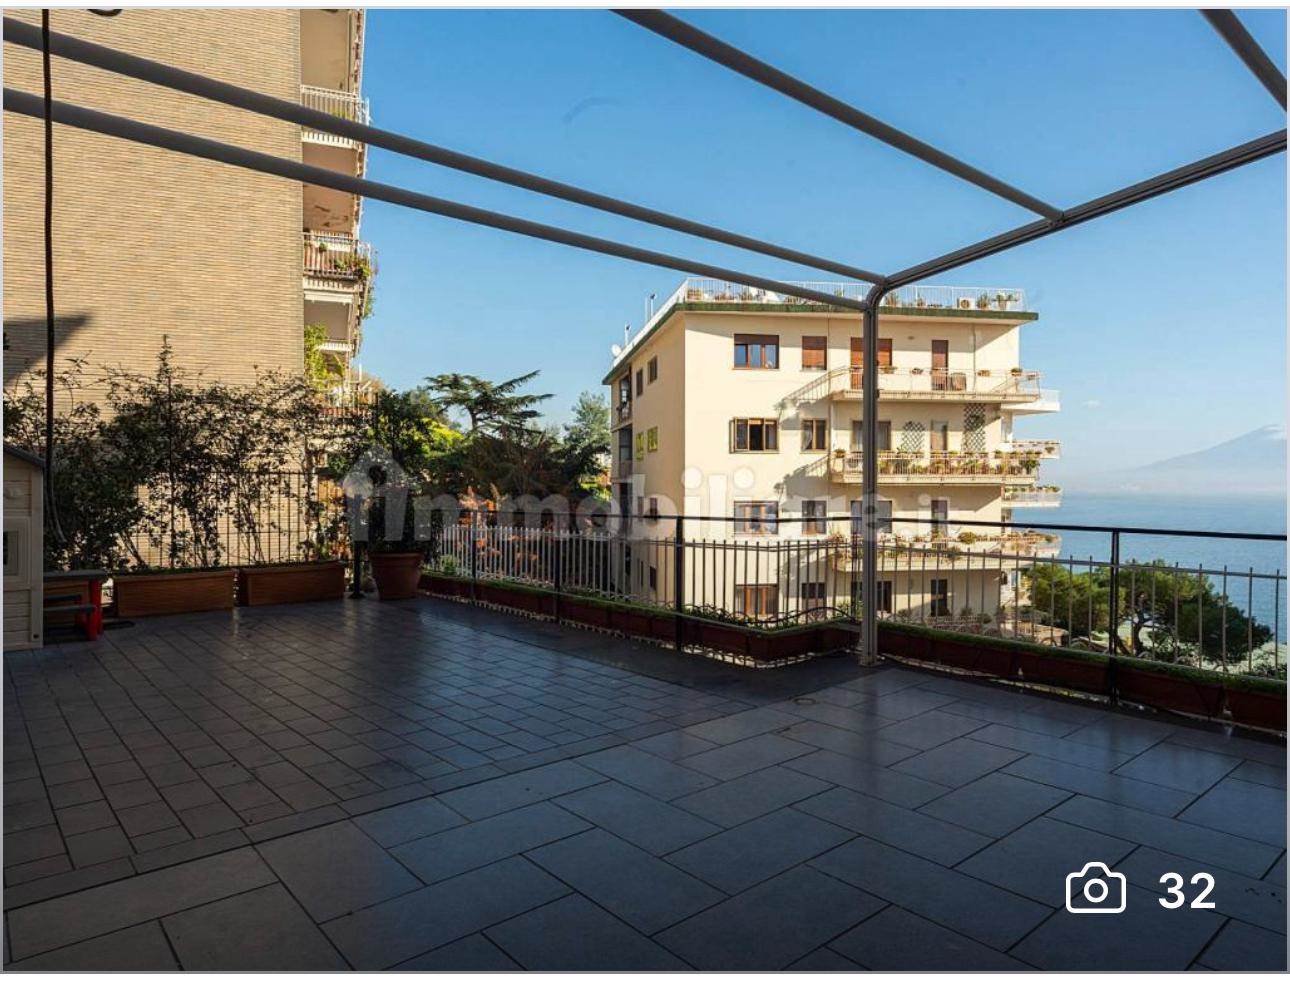 Rif: Rif. Donato Porricelli - Arco Immobiliare Luxury con sede in Via dei Mille 16 propone in vendita, zona Posillipo, un prestigioso appartamento ubicato in contesto signorile e tranquillo. Il 